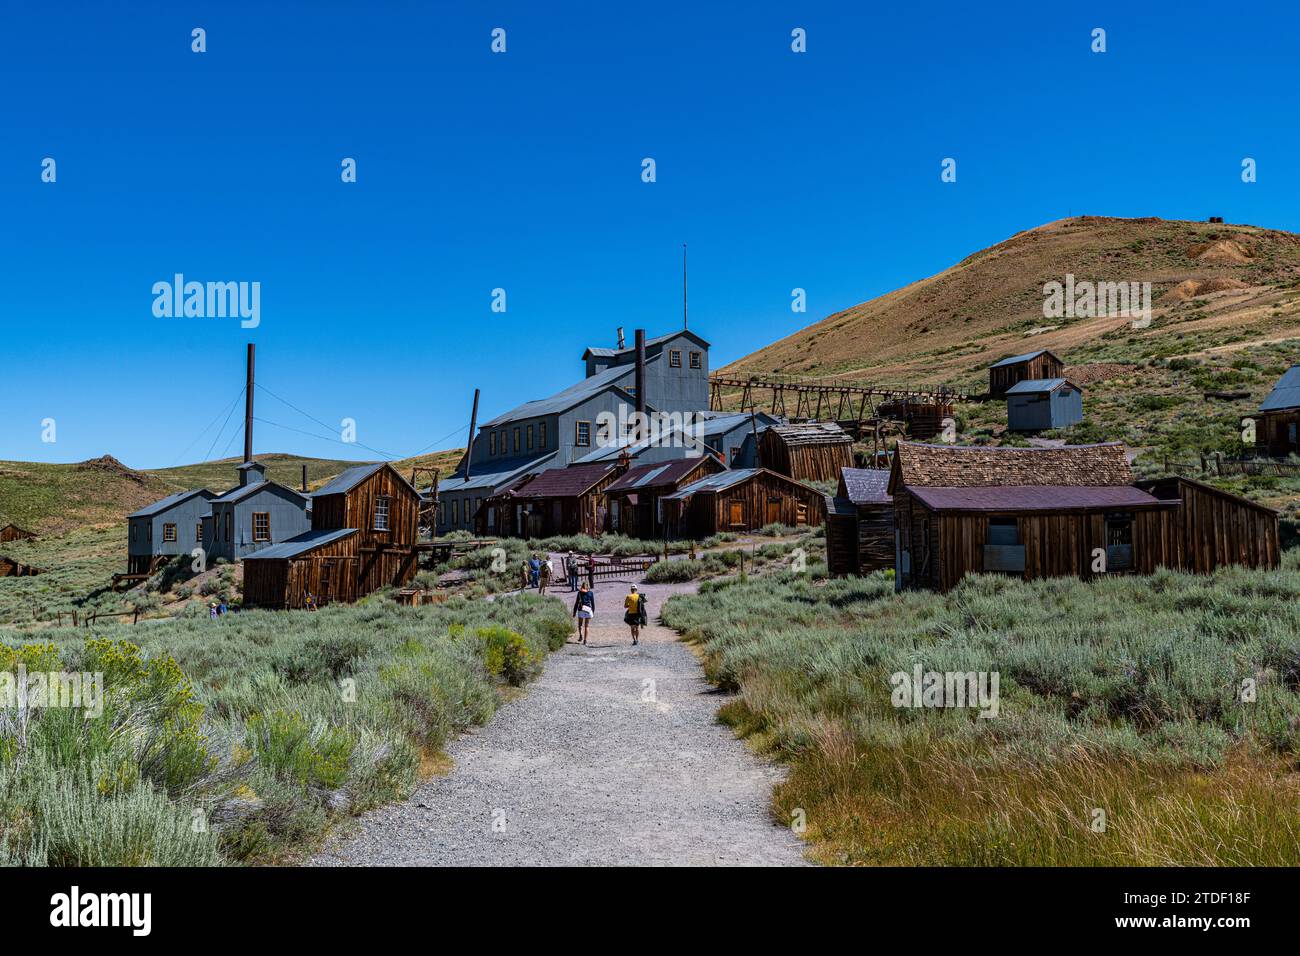 Ville fantôme de Bodie, Sierra Nevada, Californie, États-Unis d'Amérique, Amérique du Nord Banque D'Images